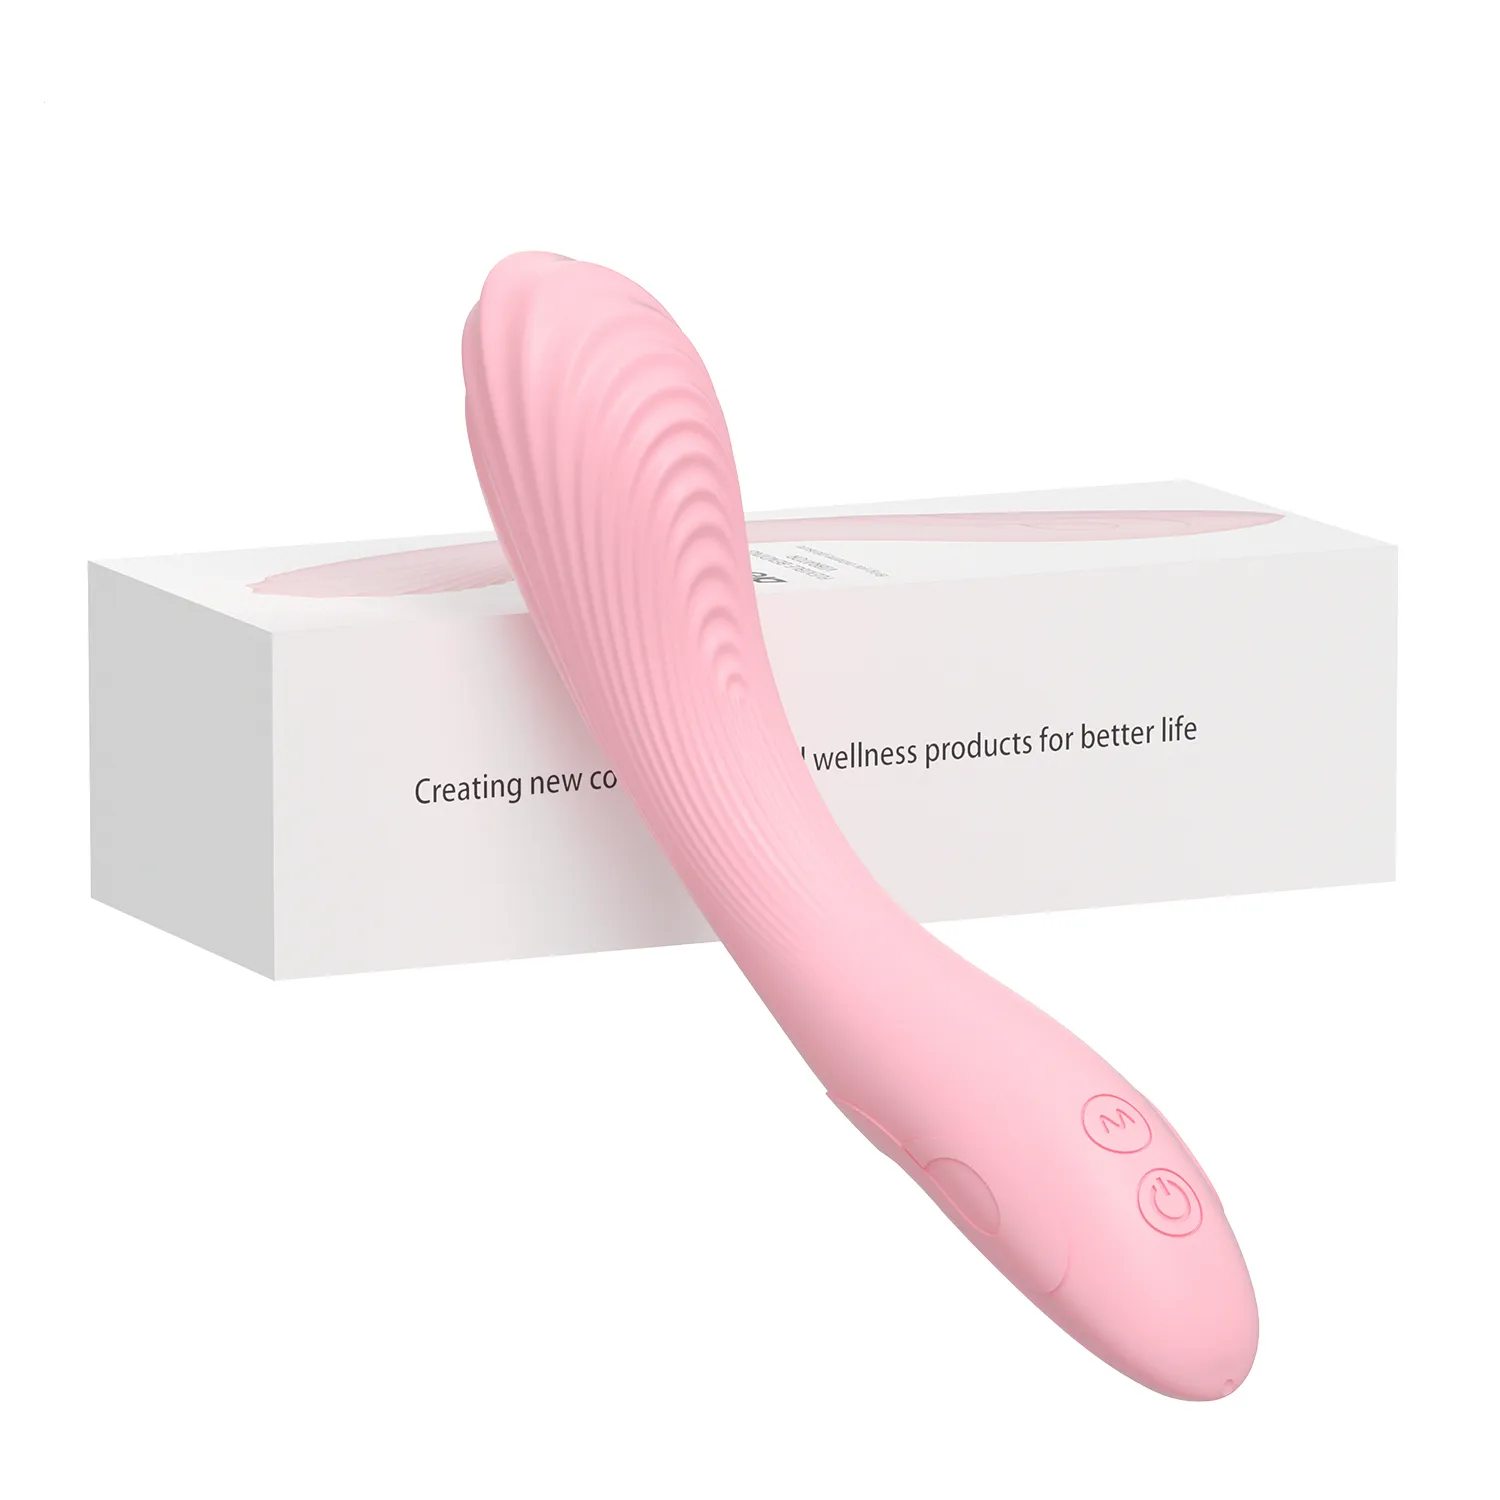 Güzellik ürünleri kobieta mastürbatorg spot wibrator seksi zabawki dla dorosych yapay penis echtaczka potny mastürbator masau produukty erotyczne